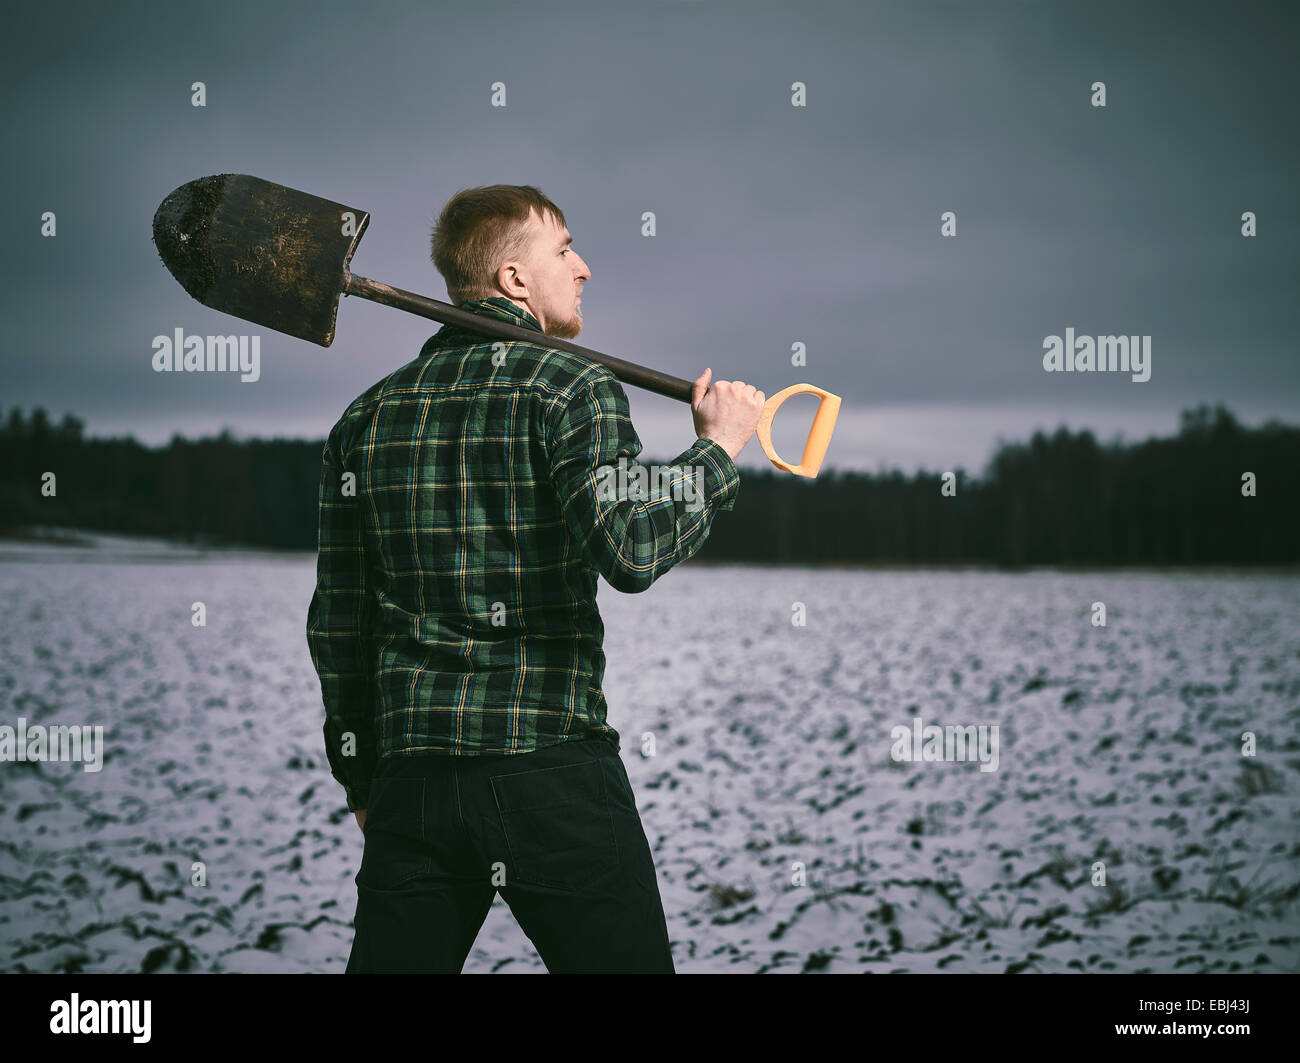 Bel giovane e la pala, snowy campo arato sul background - Croce immagine elaborata Foto Stock